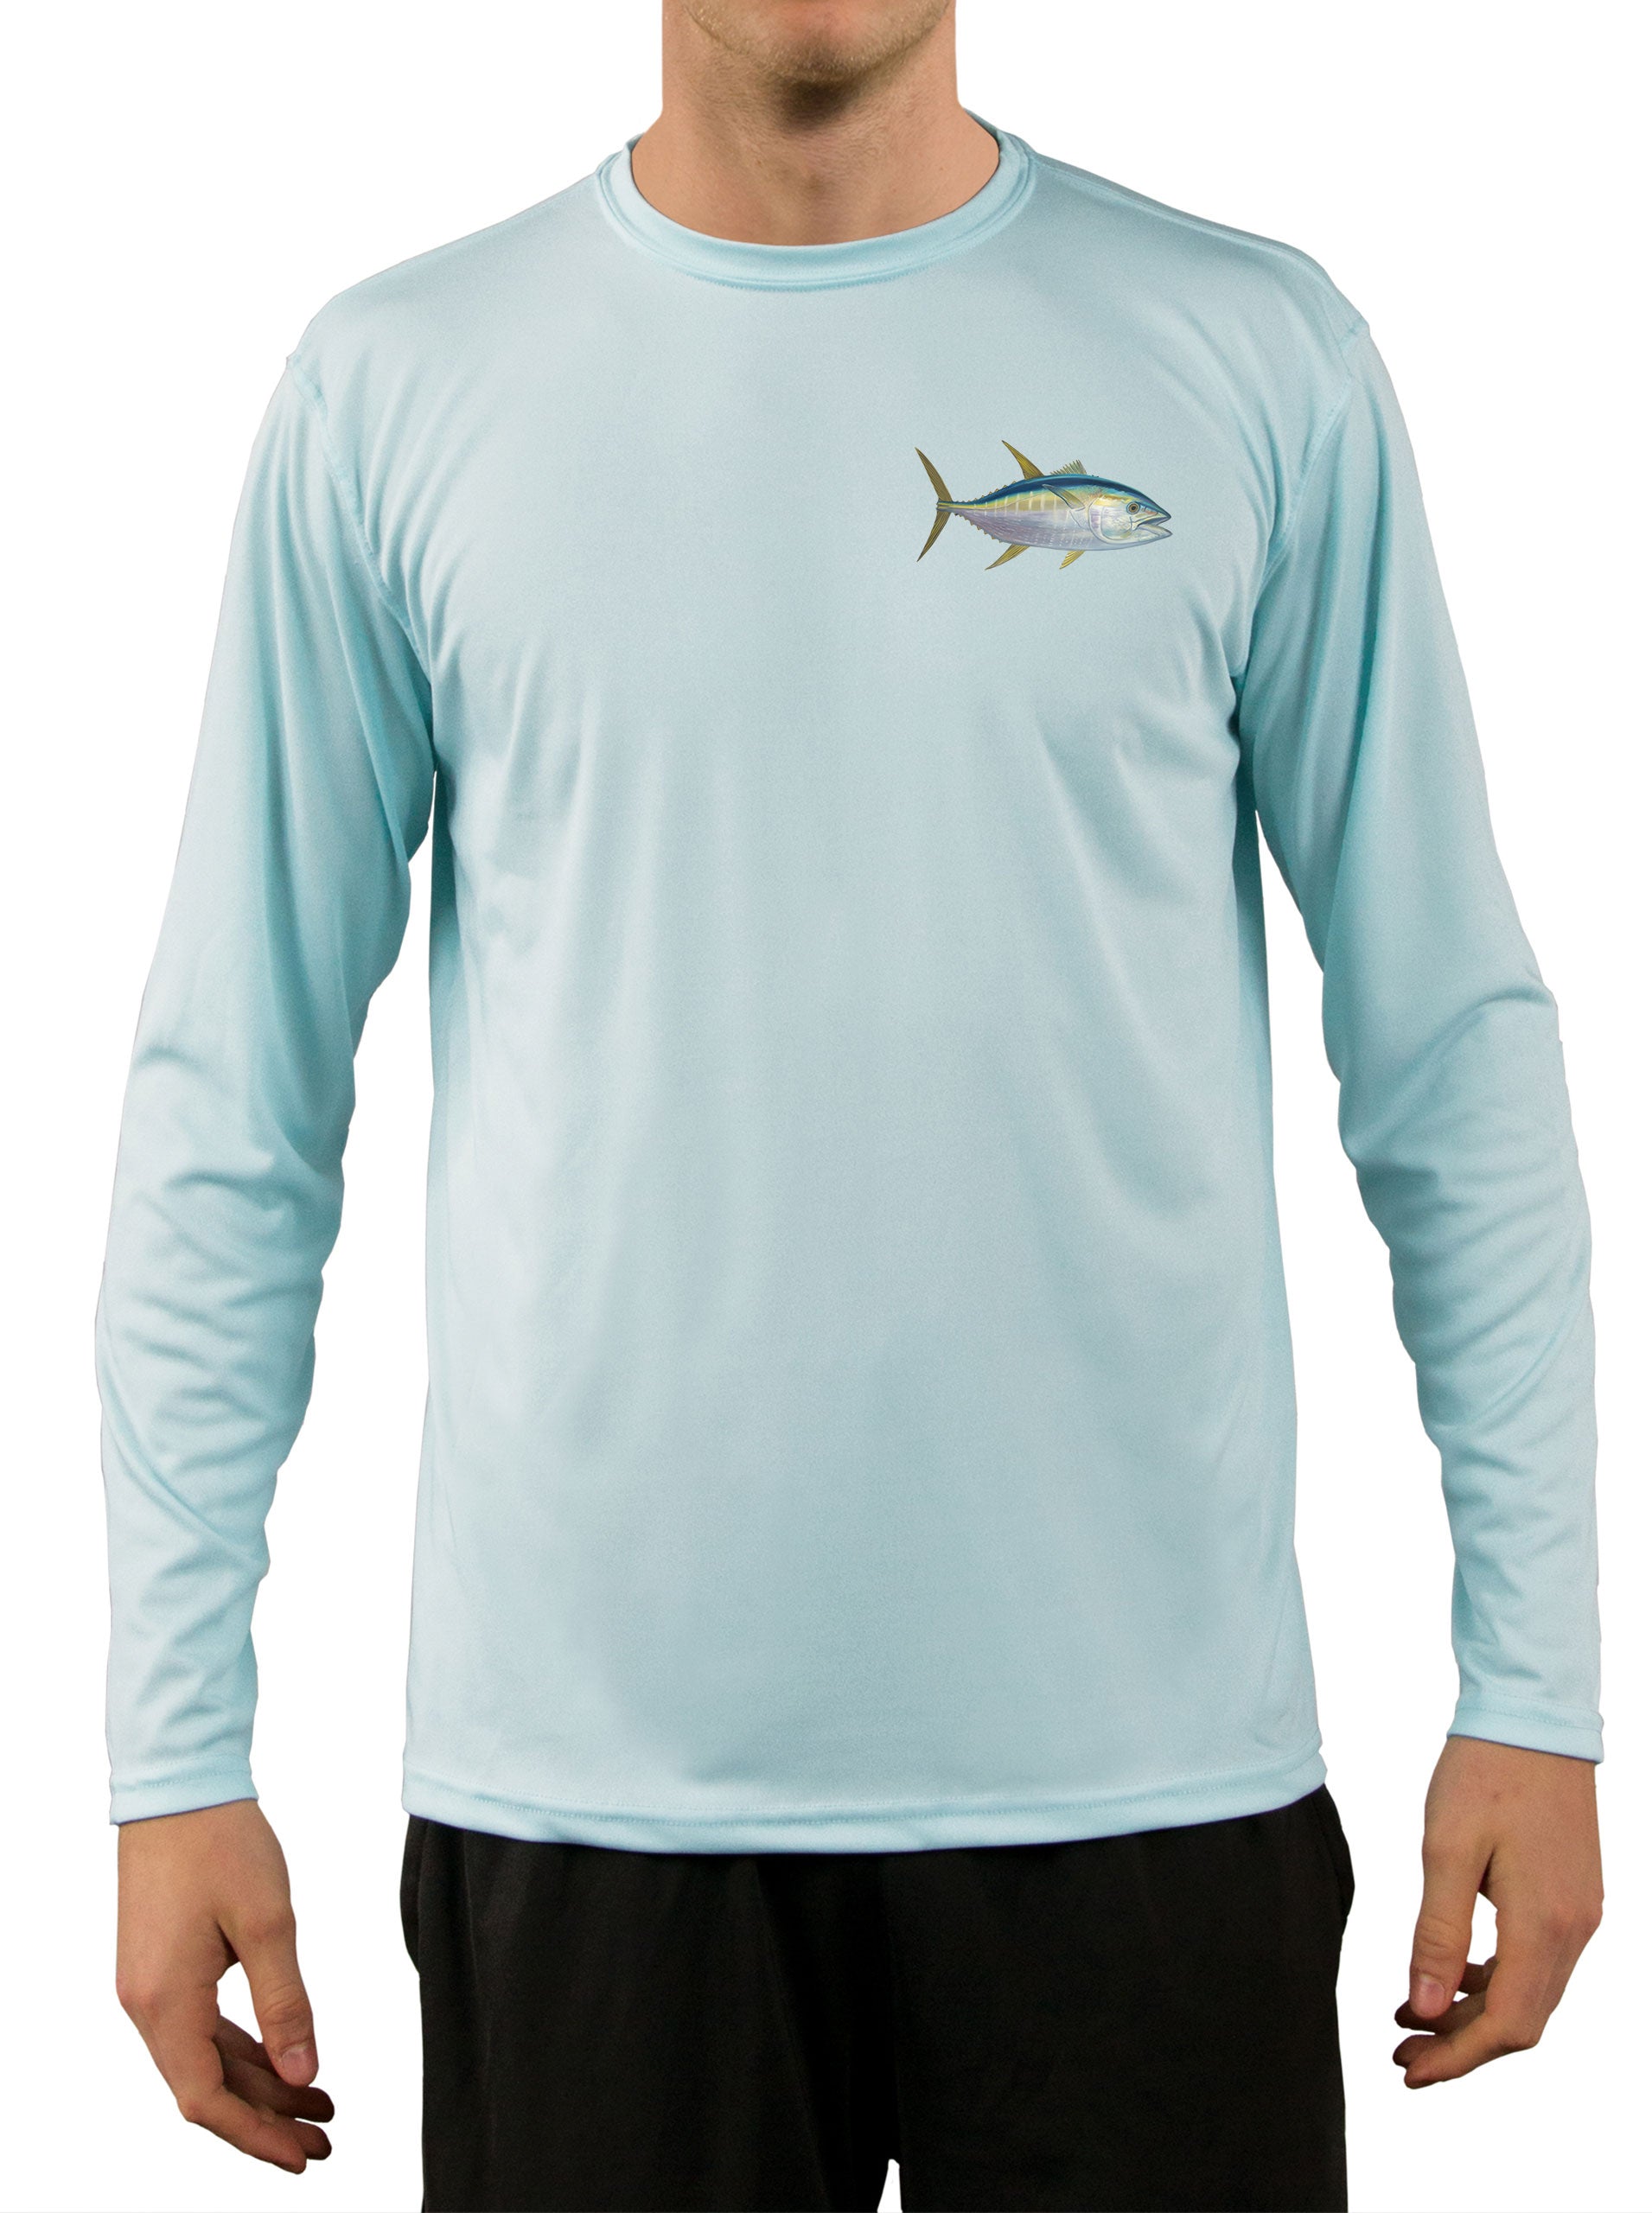 Fishing Shirts for Men - Fishing Shirt - Mens Fishing Shirts